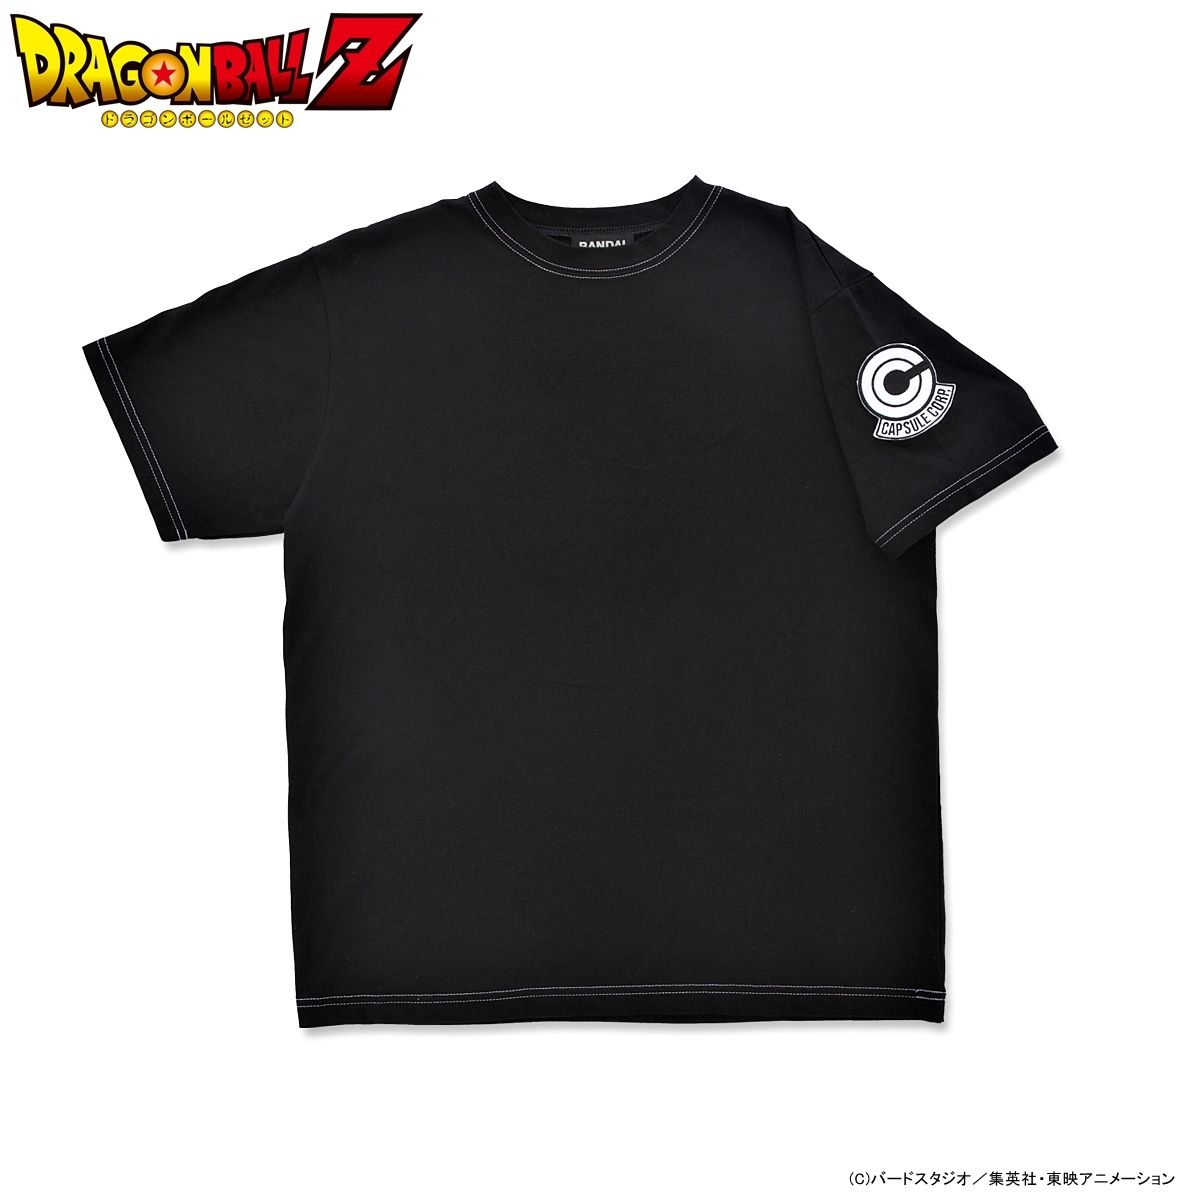 ドラゴンボールZ Tシャツ | ドラゴンボール超 ファッション 